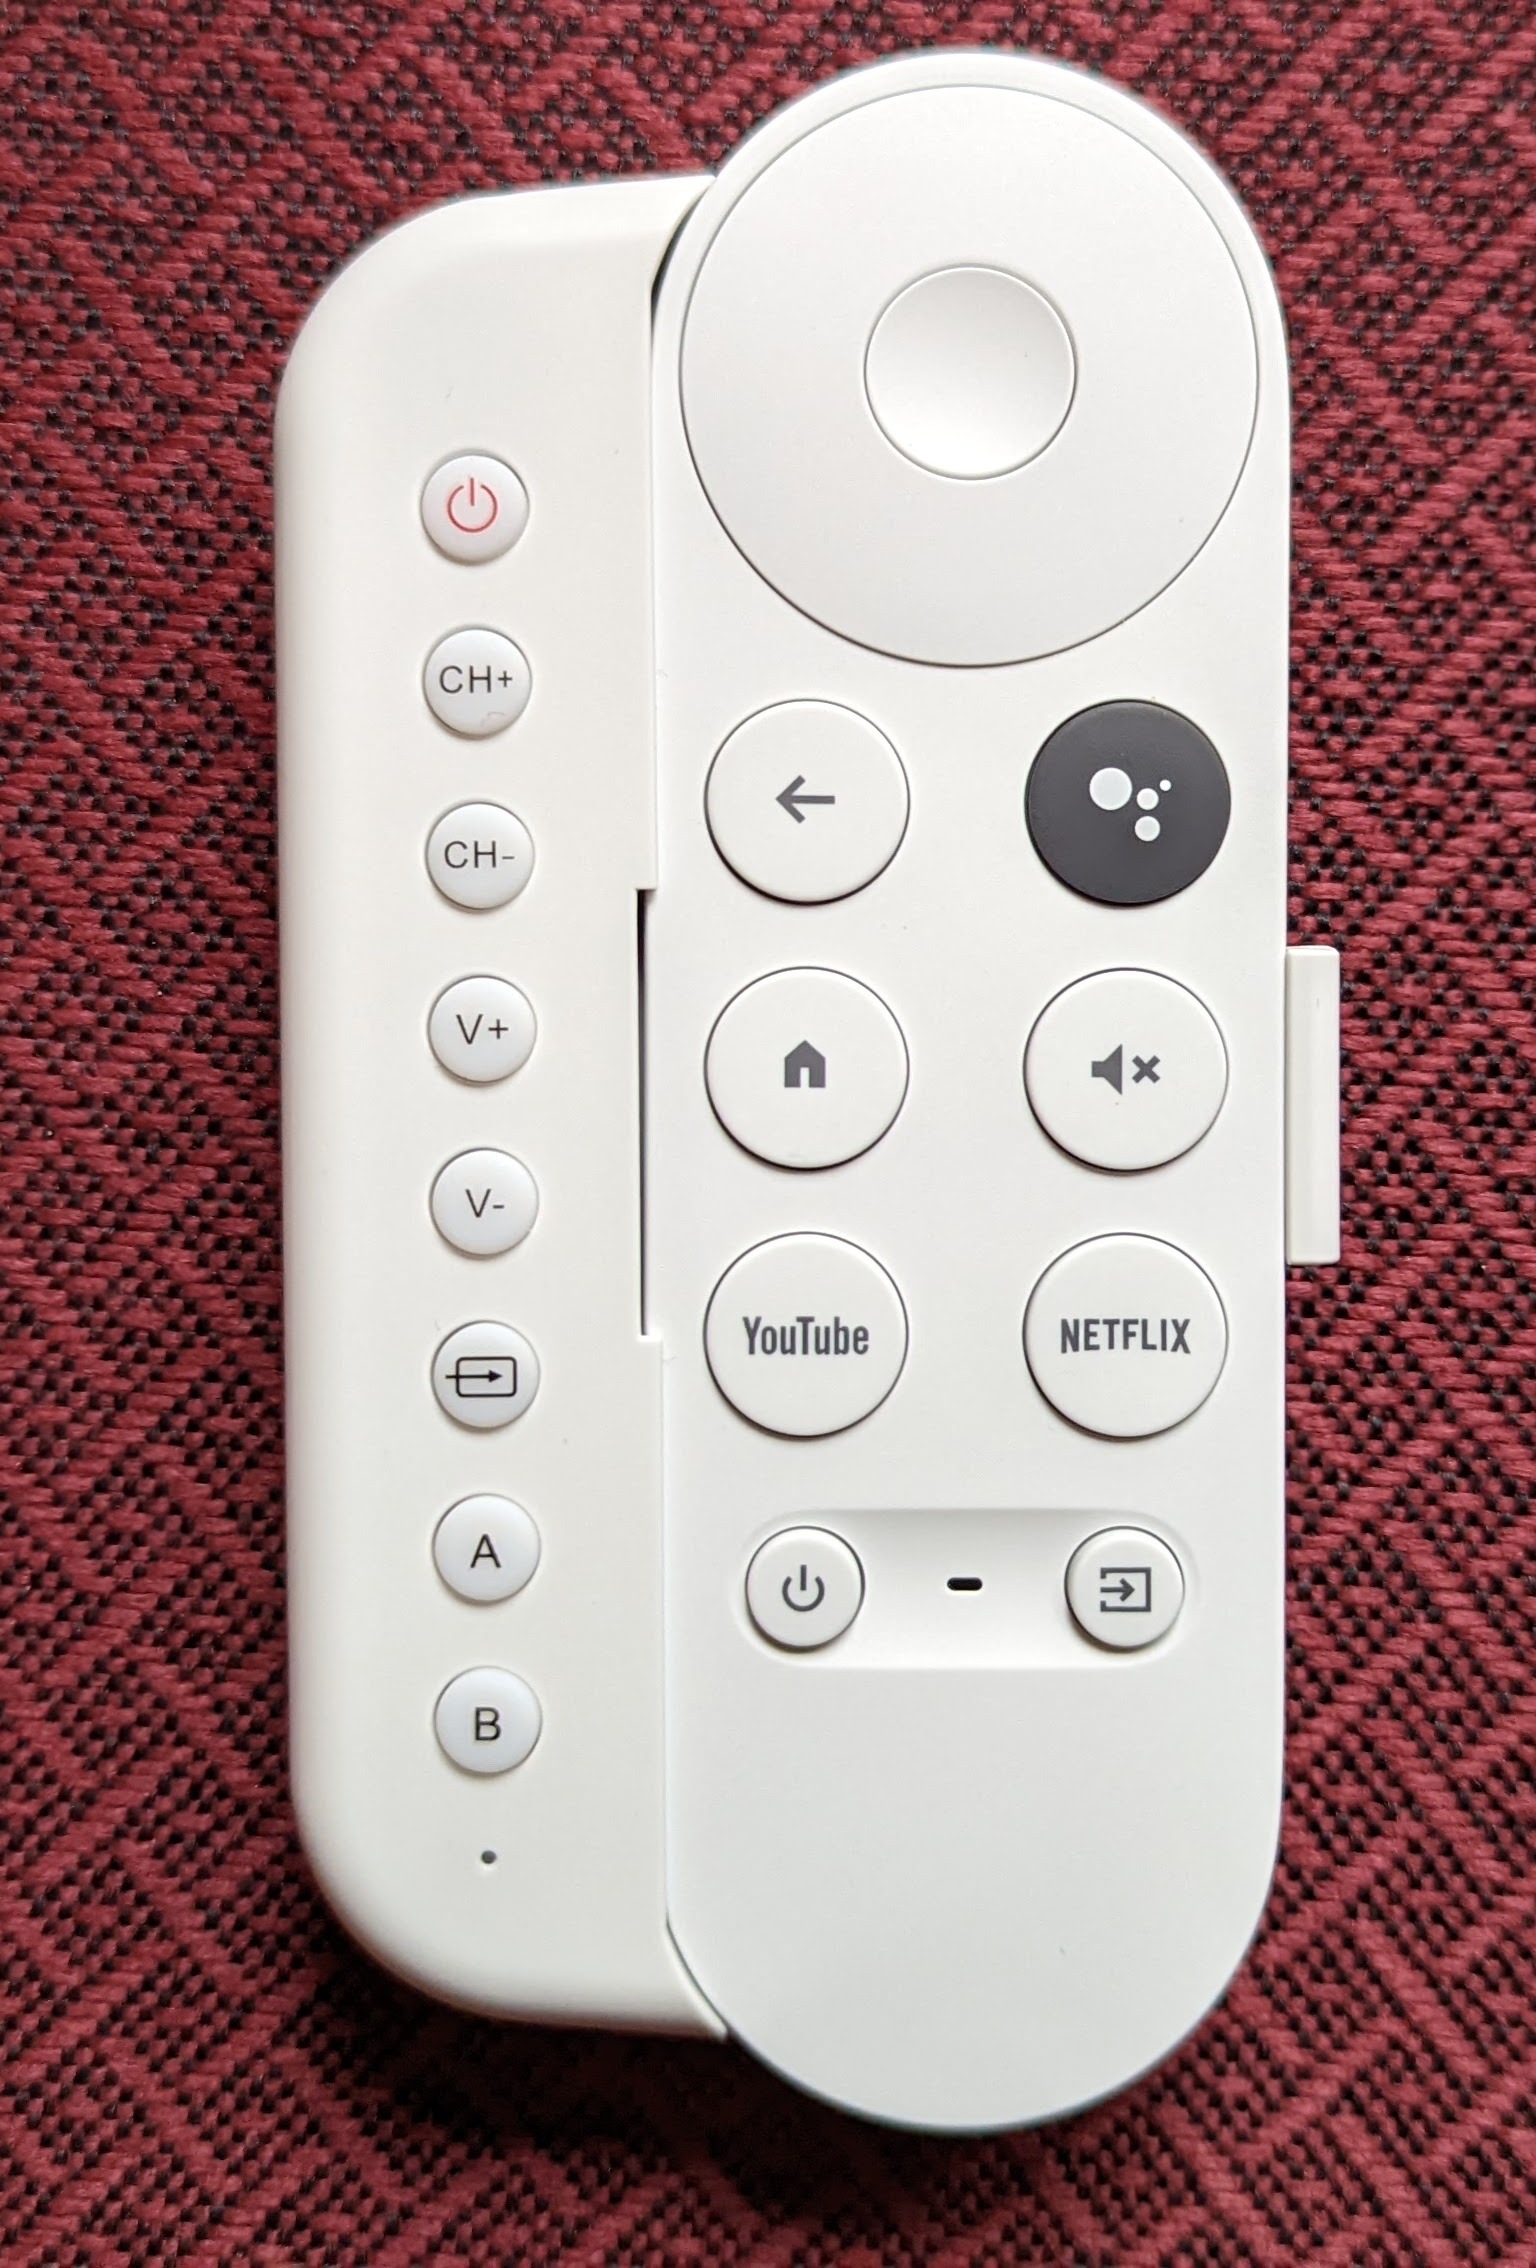 Chromecast w/Google TV Wasserstein Universal remote attachment